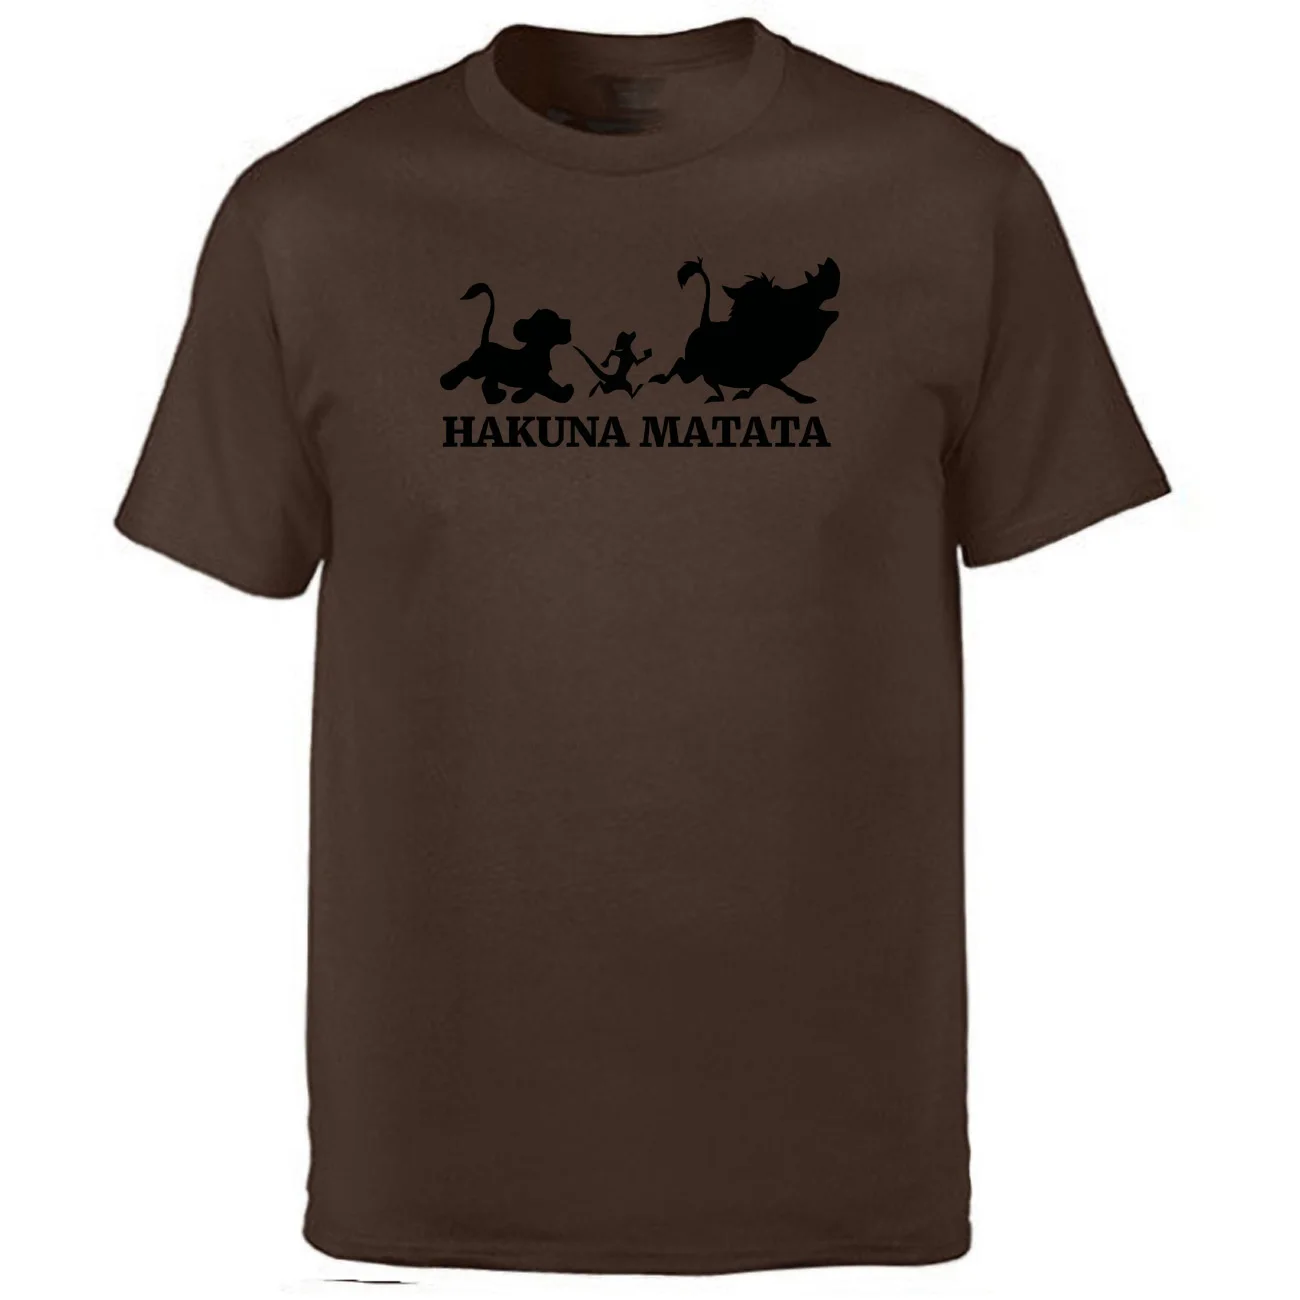 Hakuna Matata Король Лев футболка мужские летние топы Футболка Simba друг Пумба Тимон футболки черный белый серый короткий рукав - Цвет: Brown  1